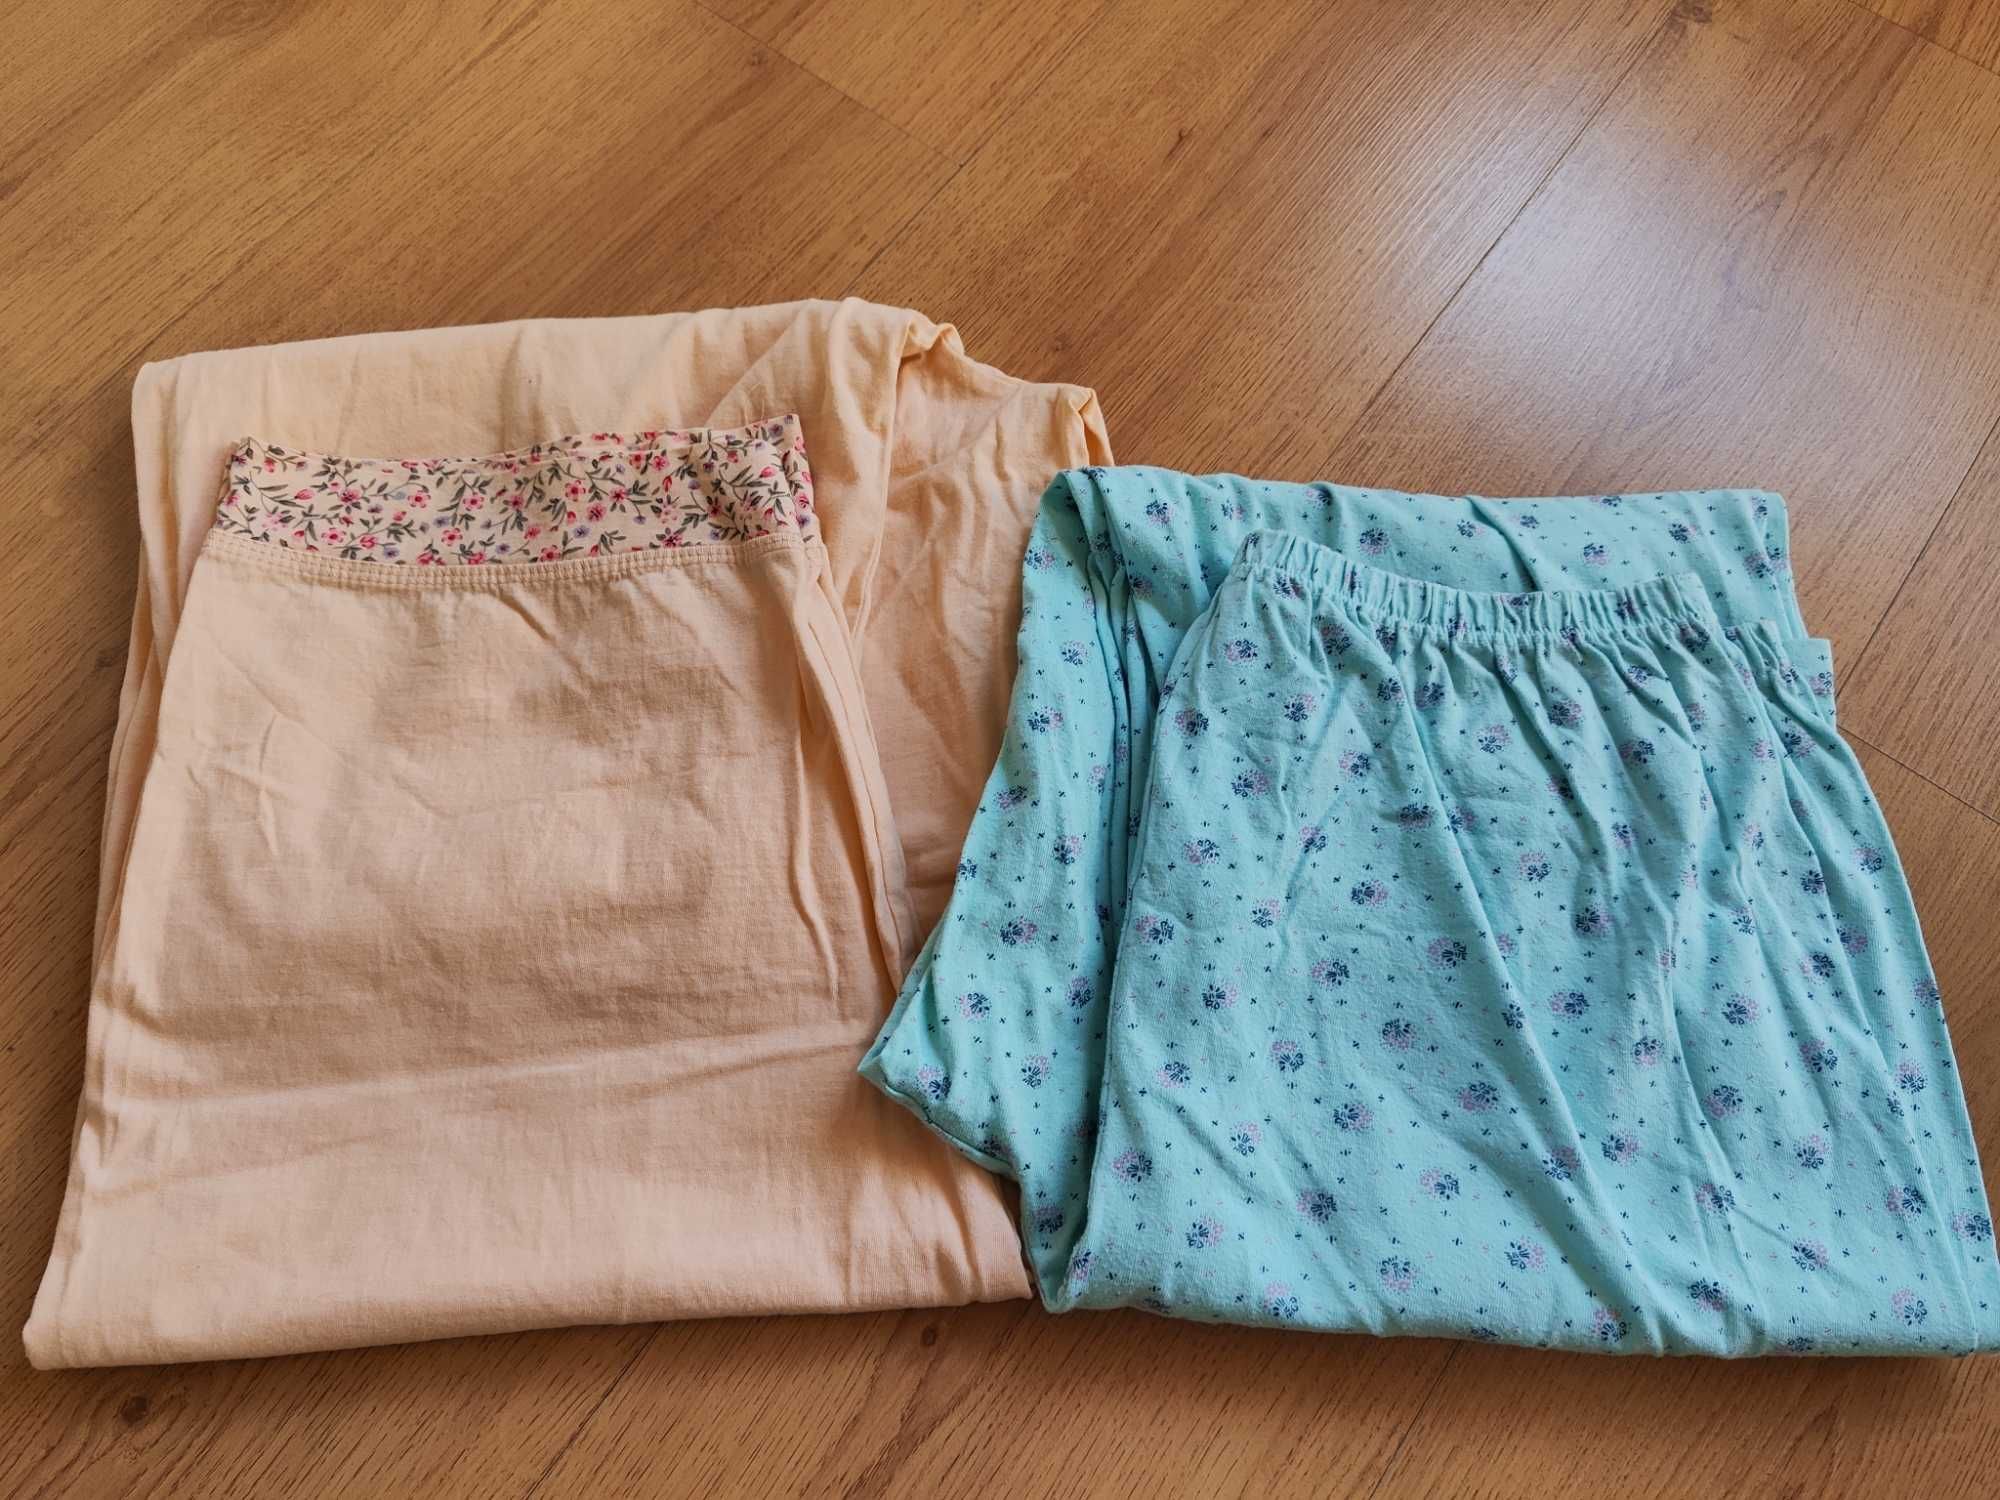 Spodnie od piżamy XL- 2szt